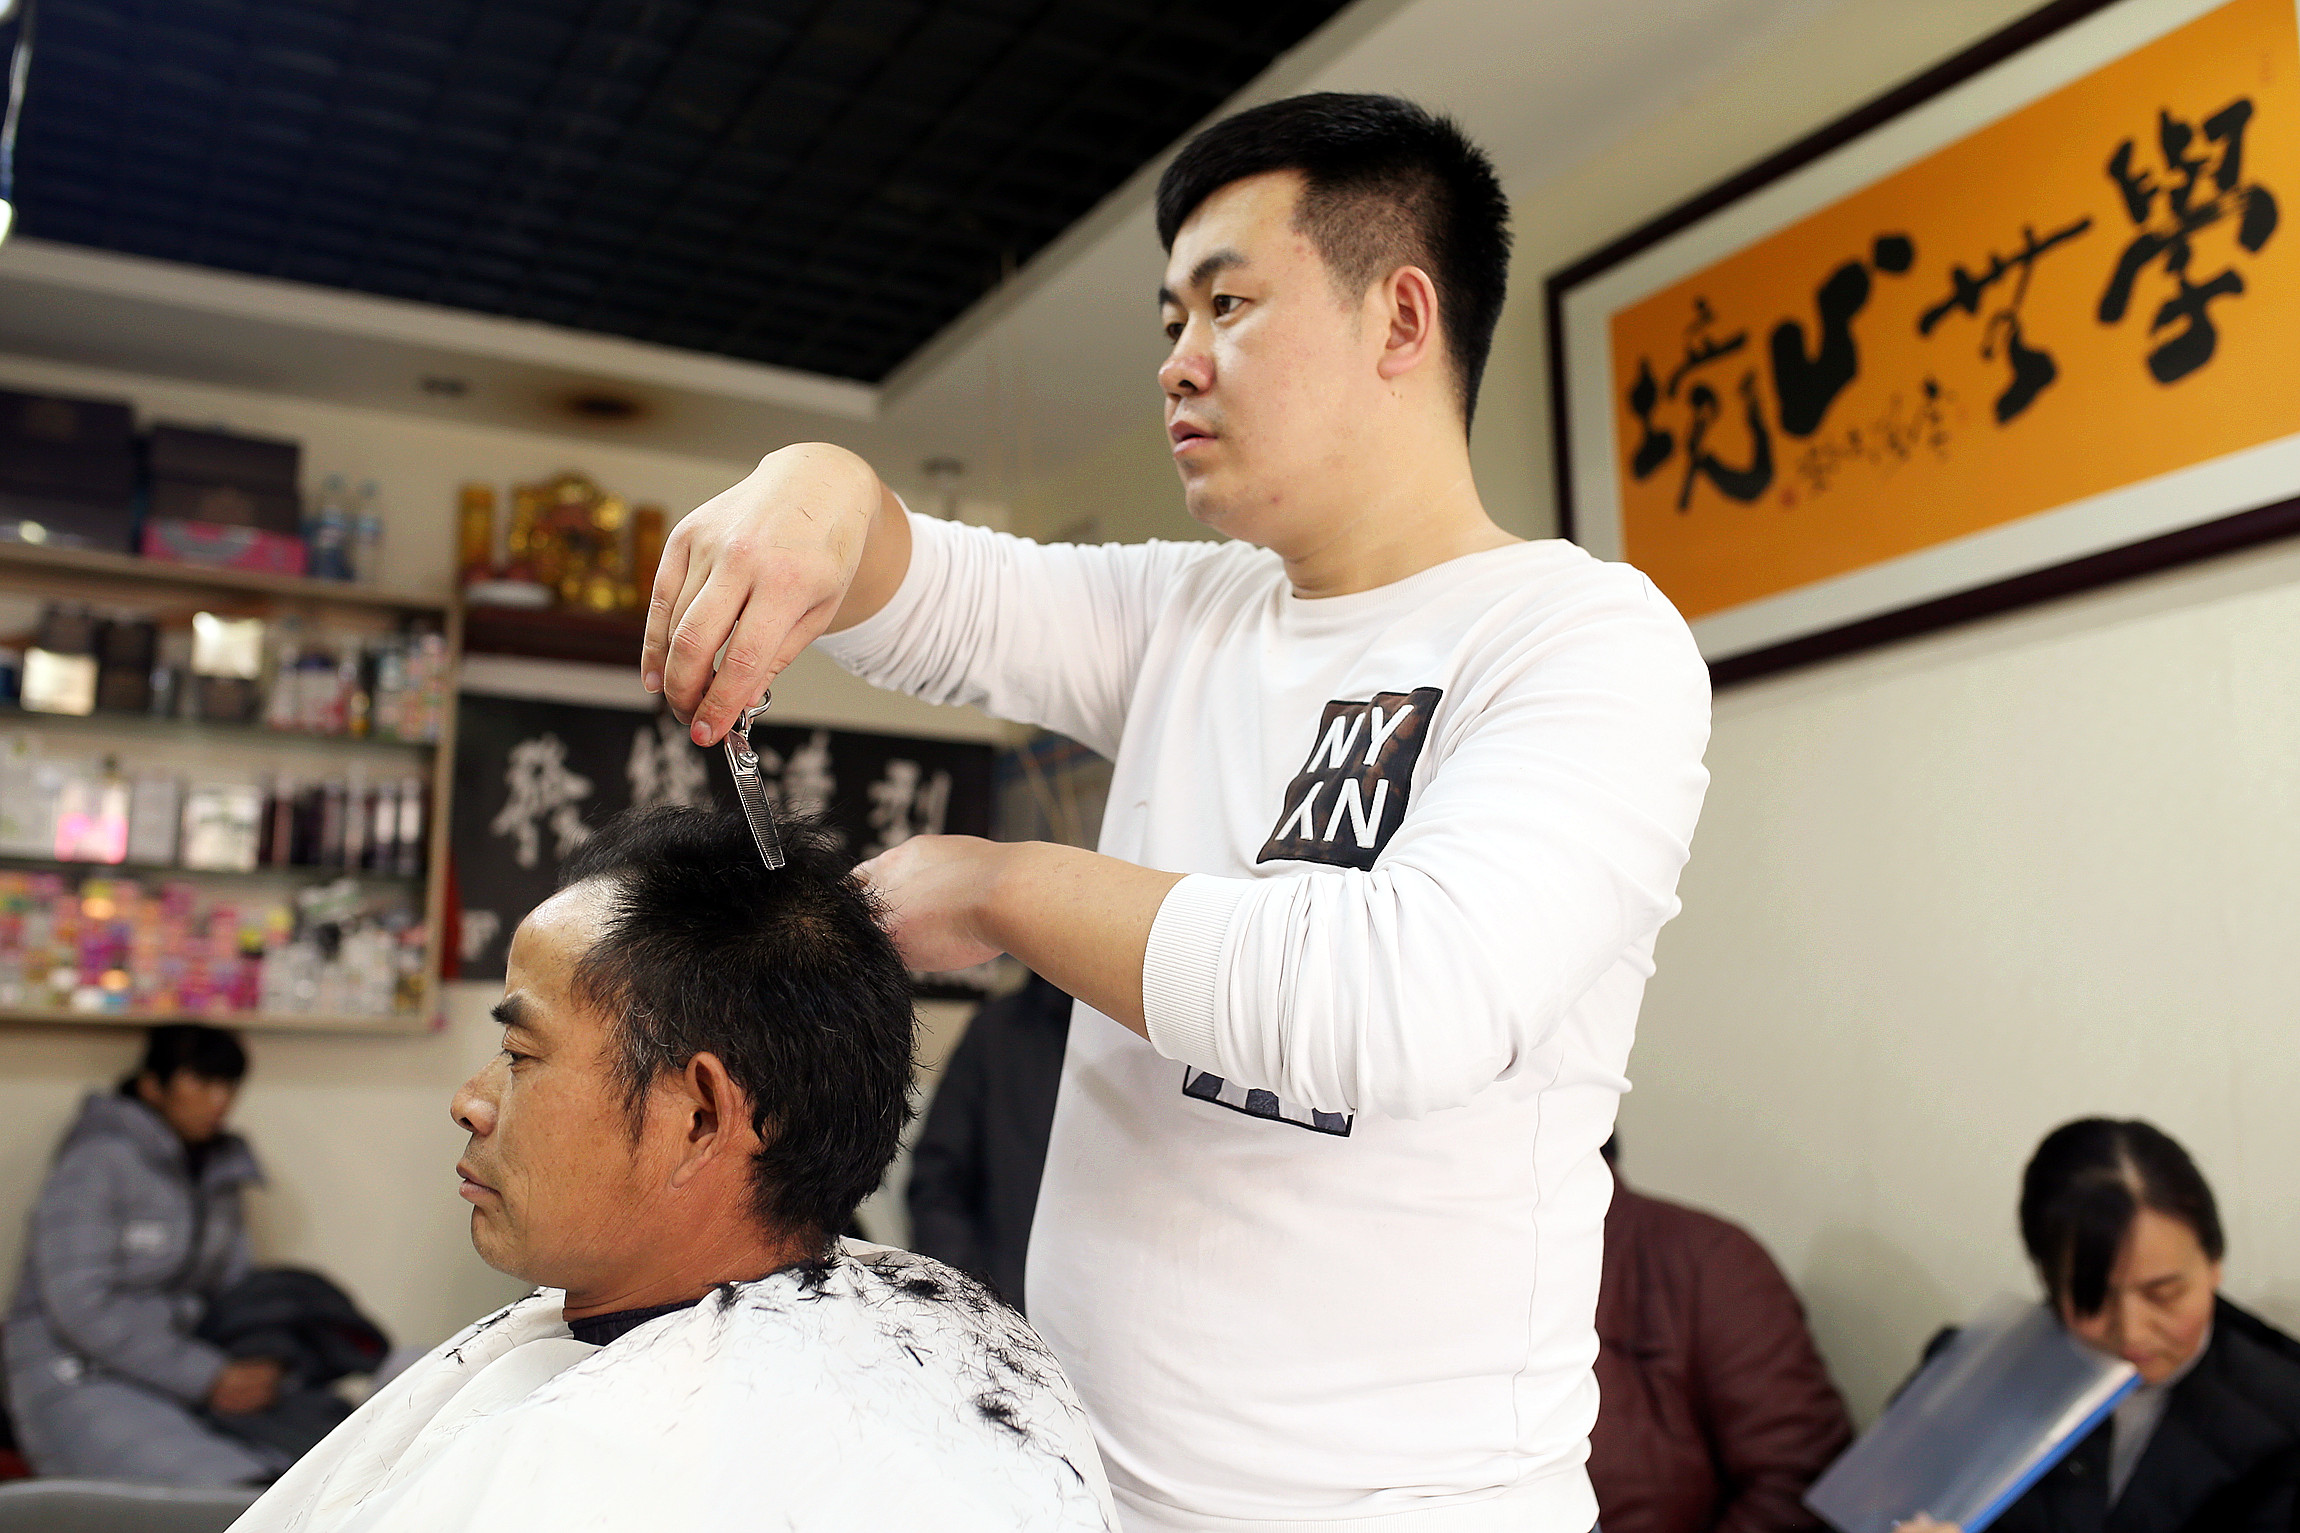 百姓生活:一个理发师的梦想